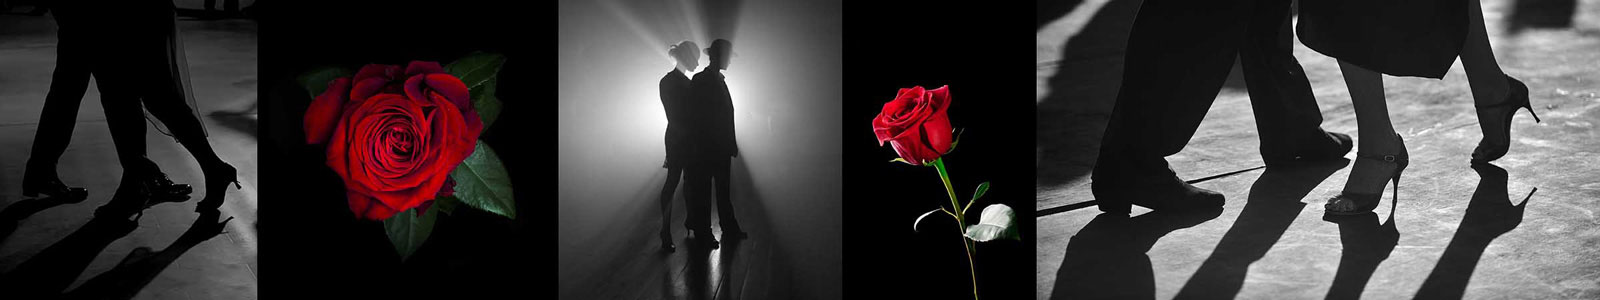 №3768 - Тени танцующих танго и красные розы